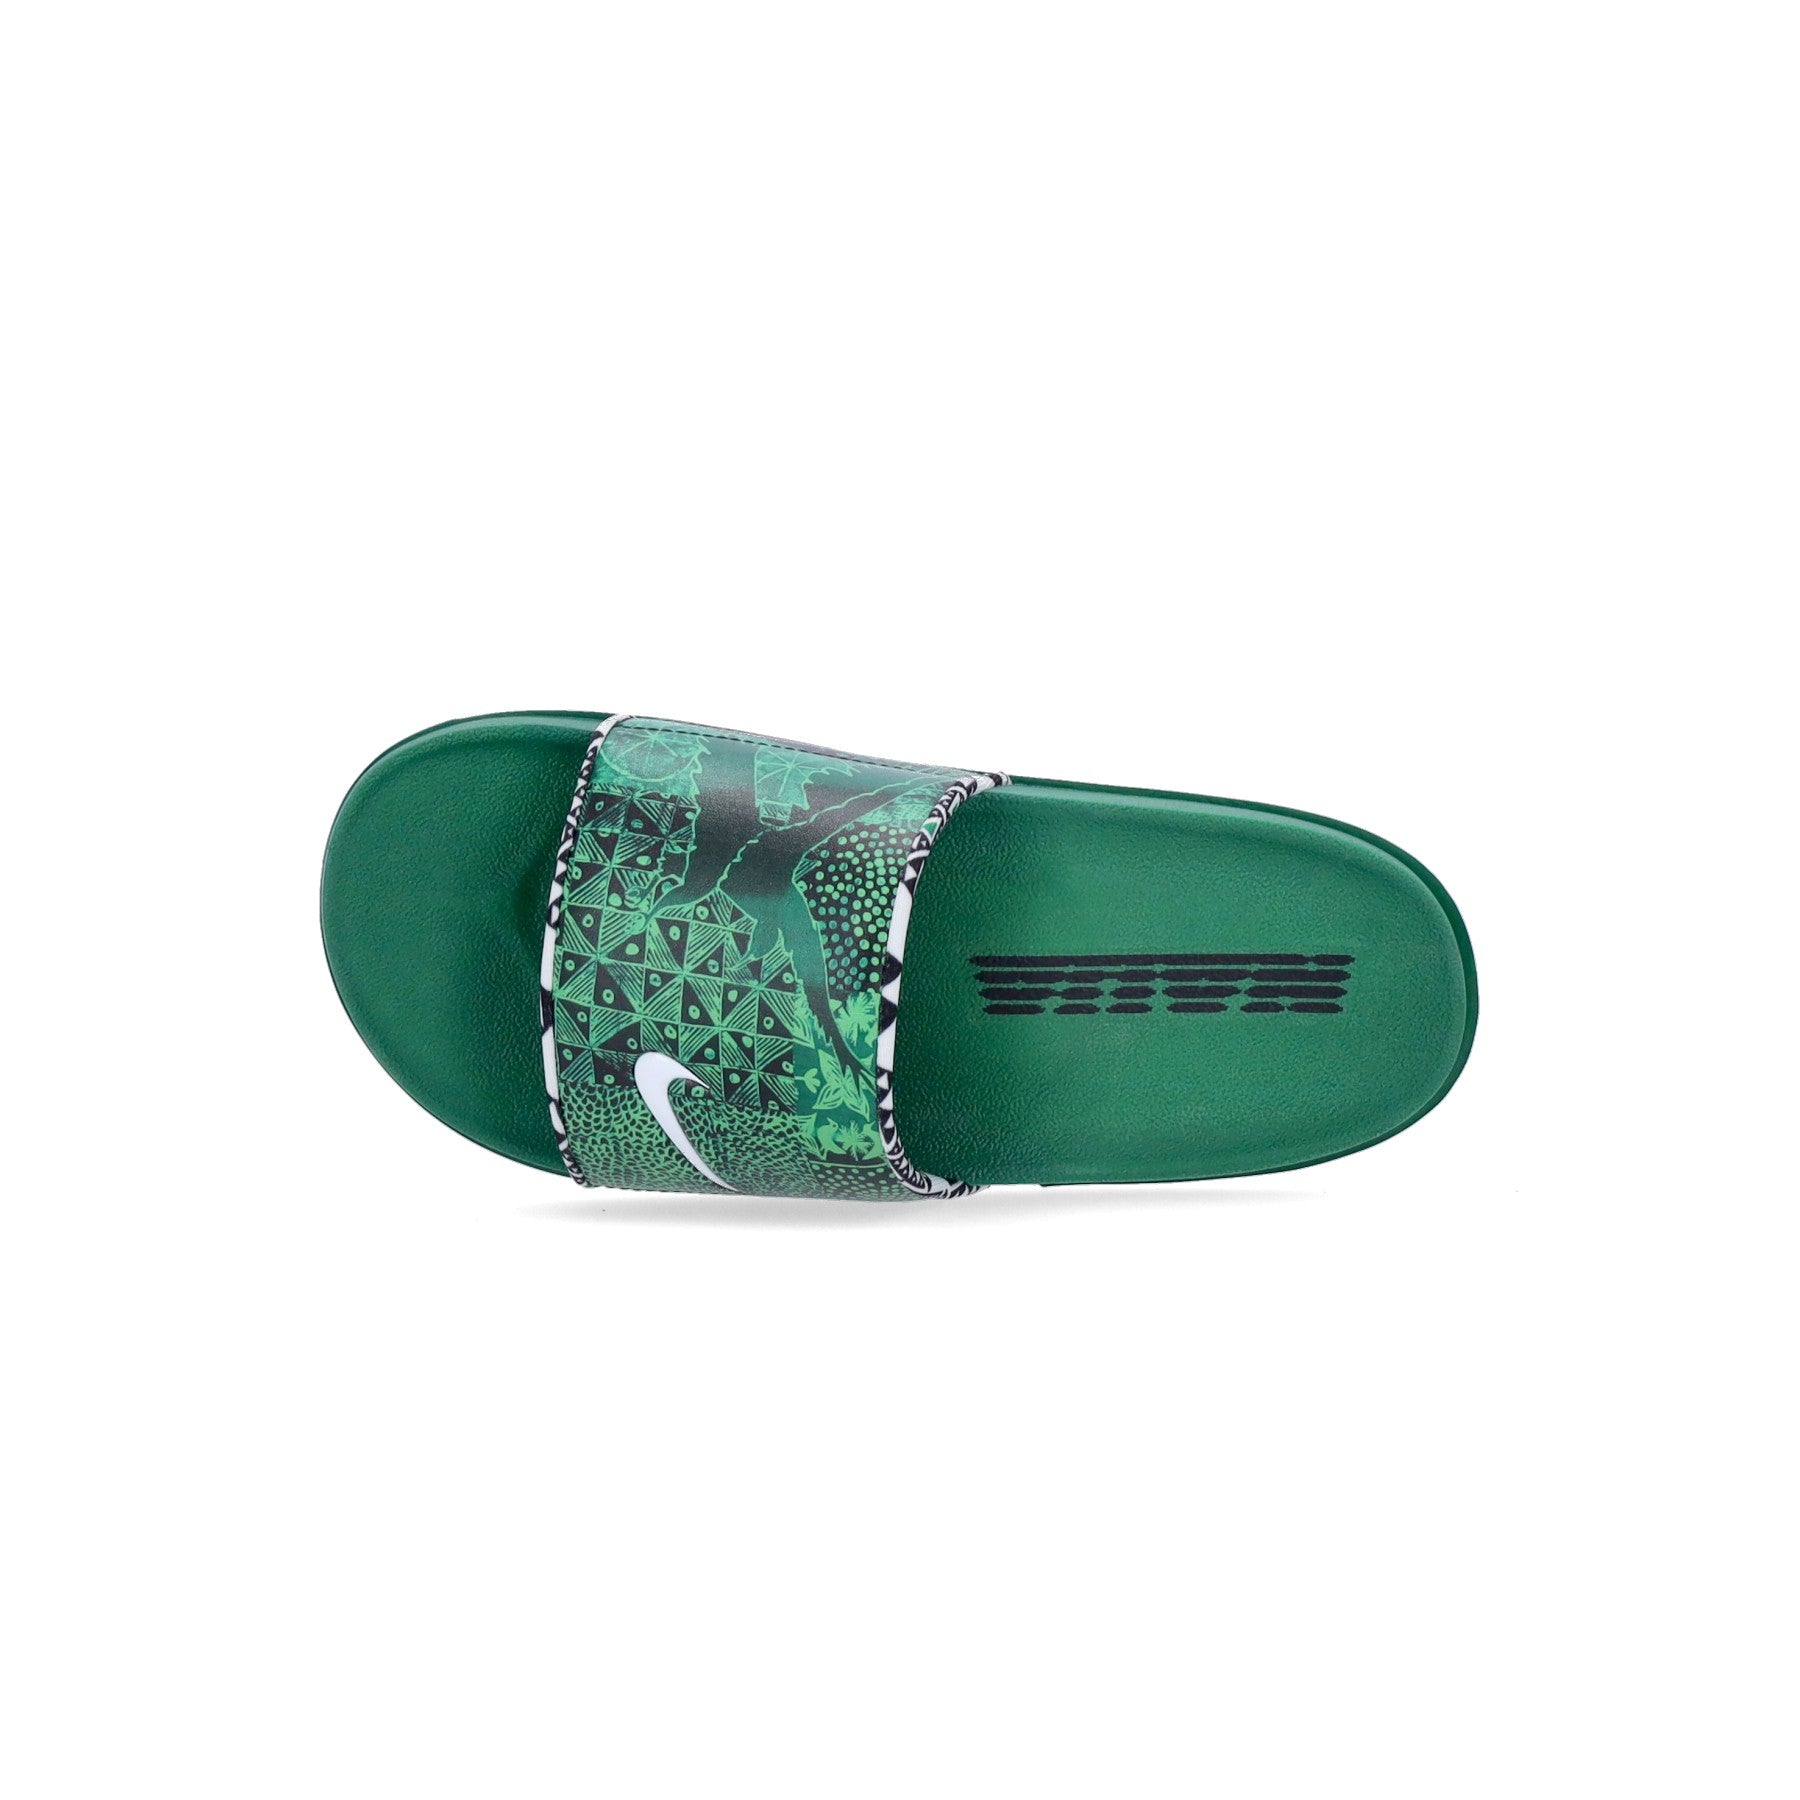 Offcourt Slide Men's Slippers Green Spark/white/pine Green/pro Green